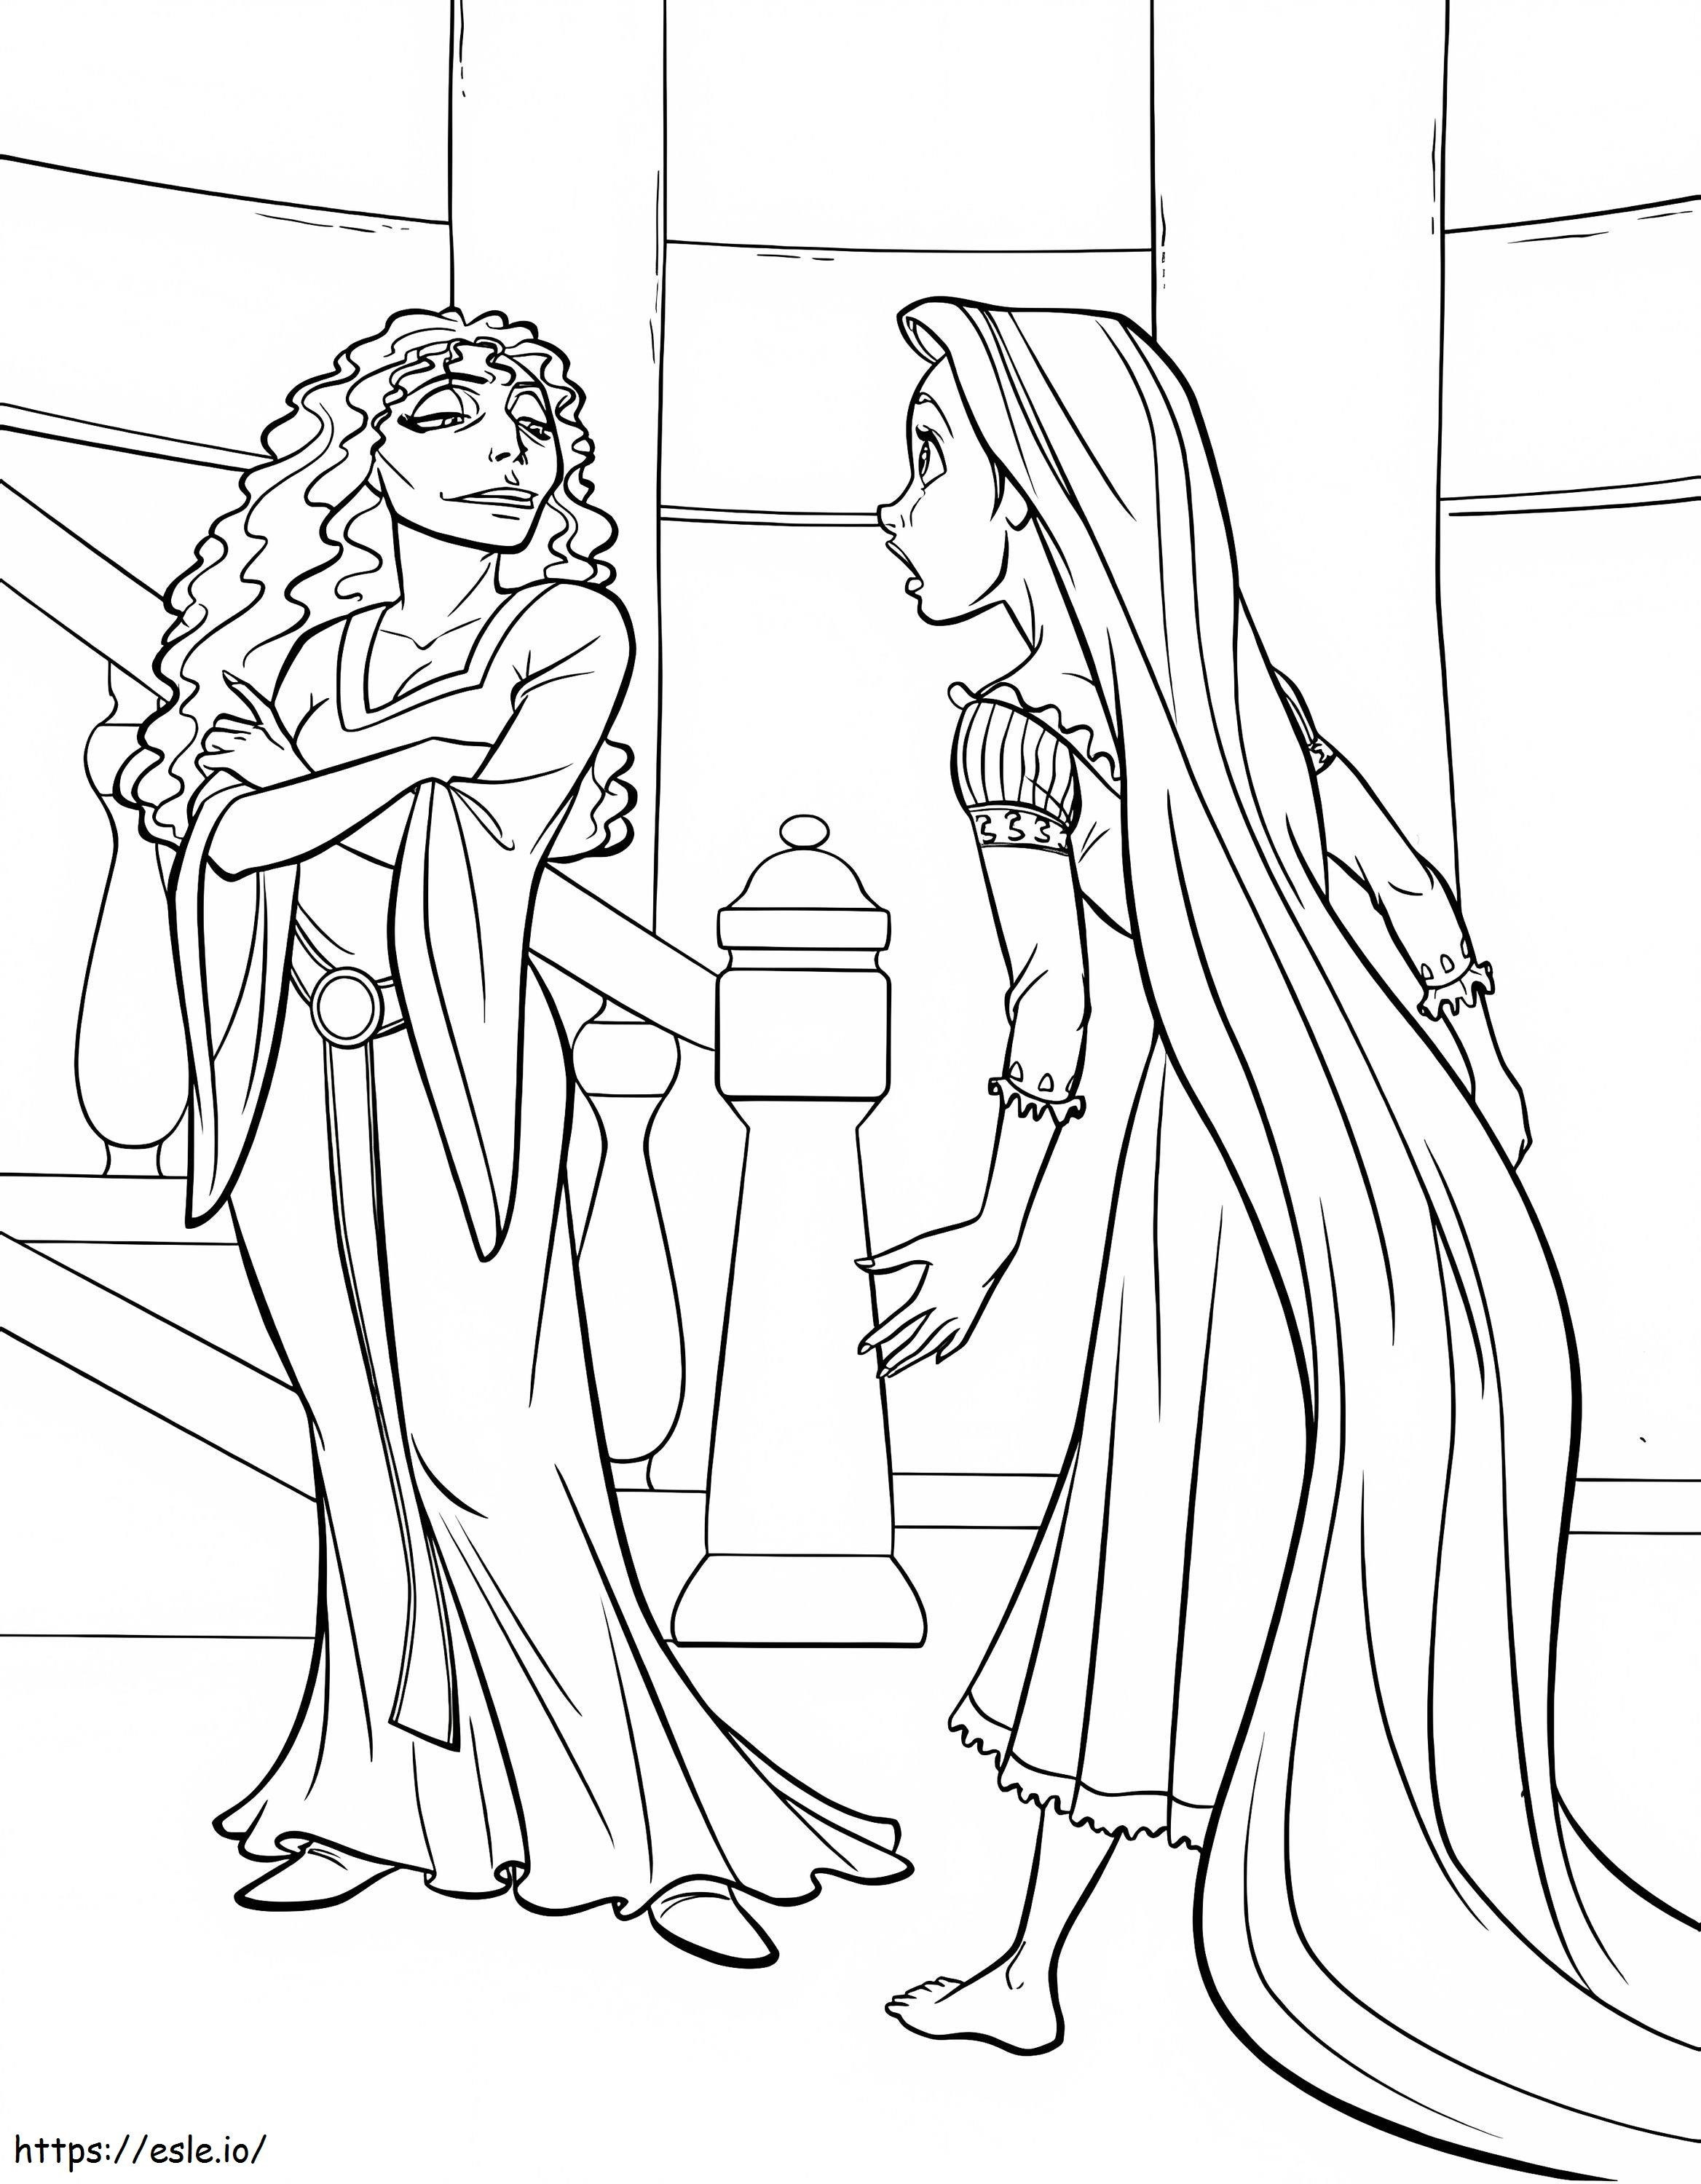 Rapunzel y madre Gothel para colorear